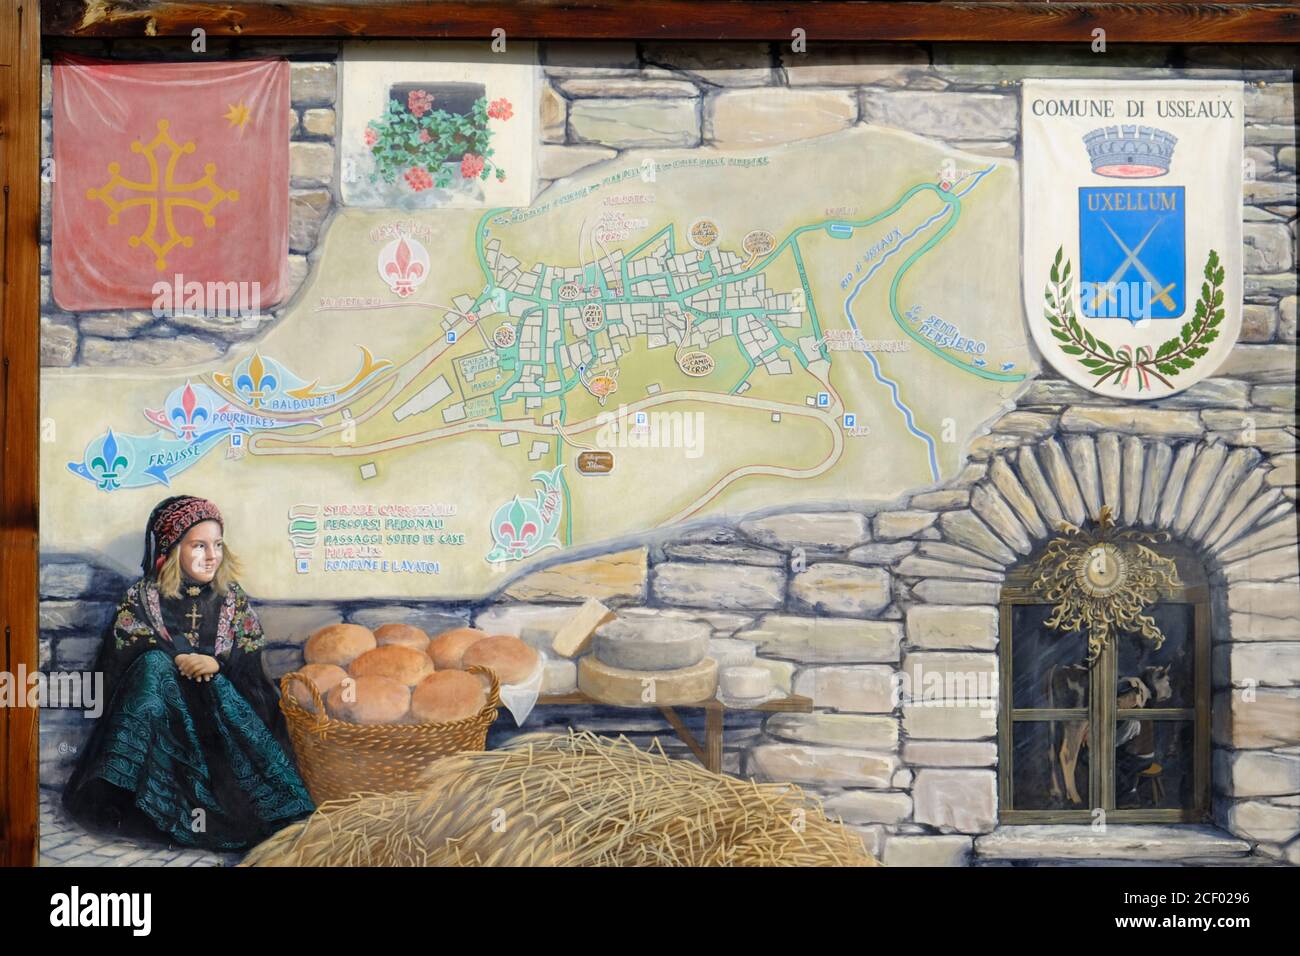 Murale dipinto di una giovane ragazza in costume tradizionale di montagna accanto ad un cesto di pane fresco e di formaggi tondi nel piccolo villaggio di Usseaux, Piemon Foto Stock